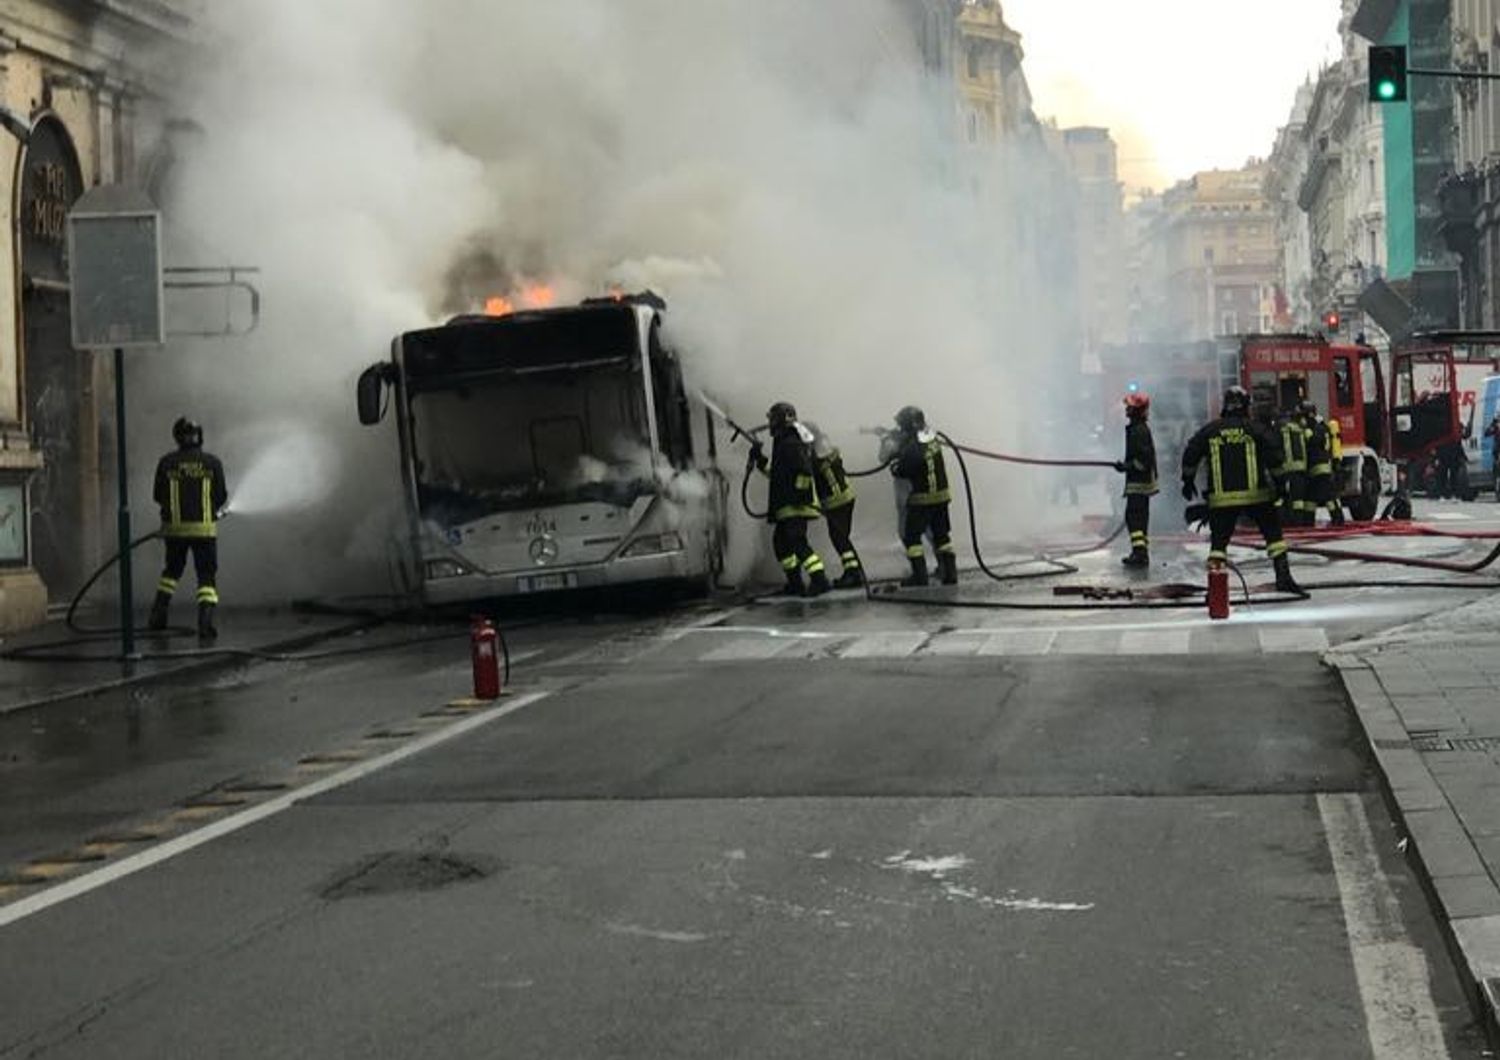 autobus atac esplode prende fuoco roma